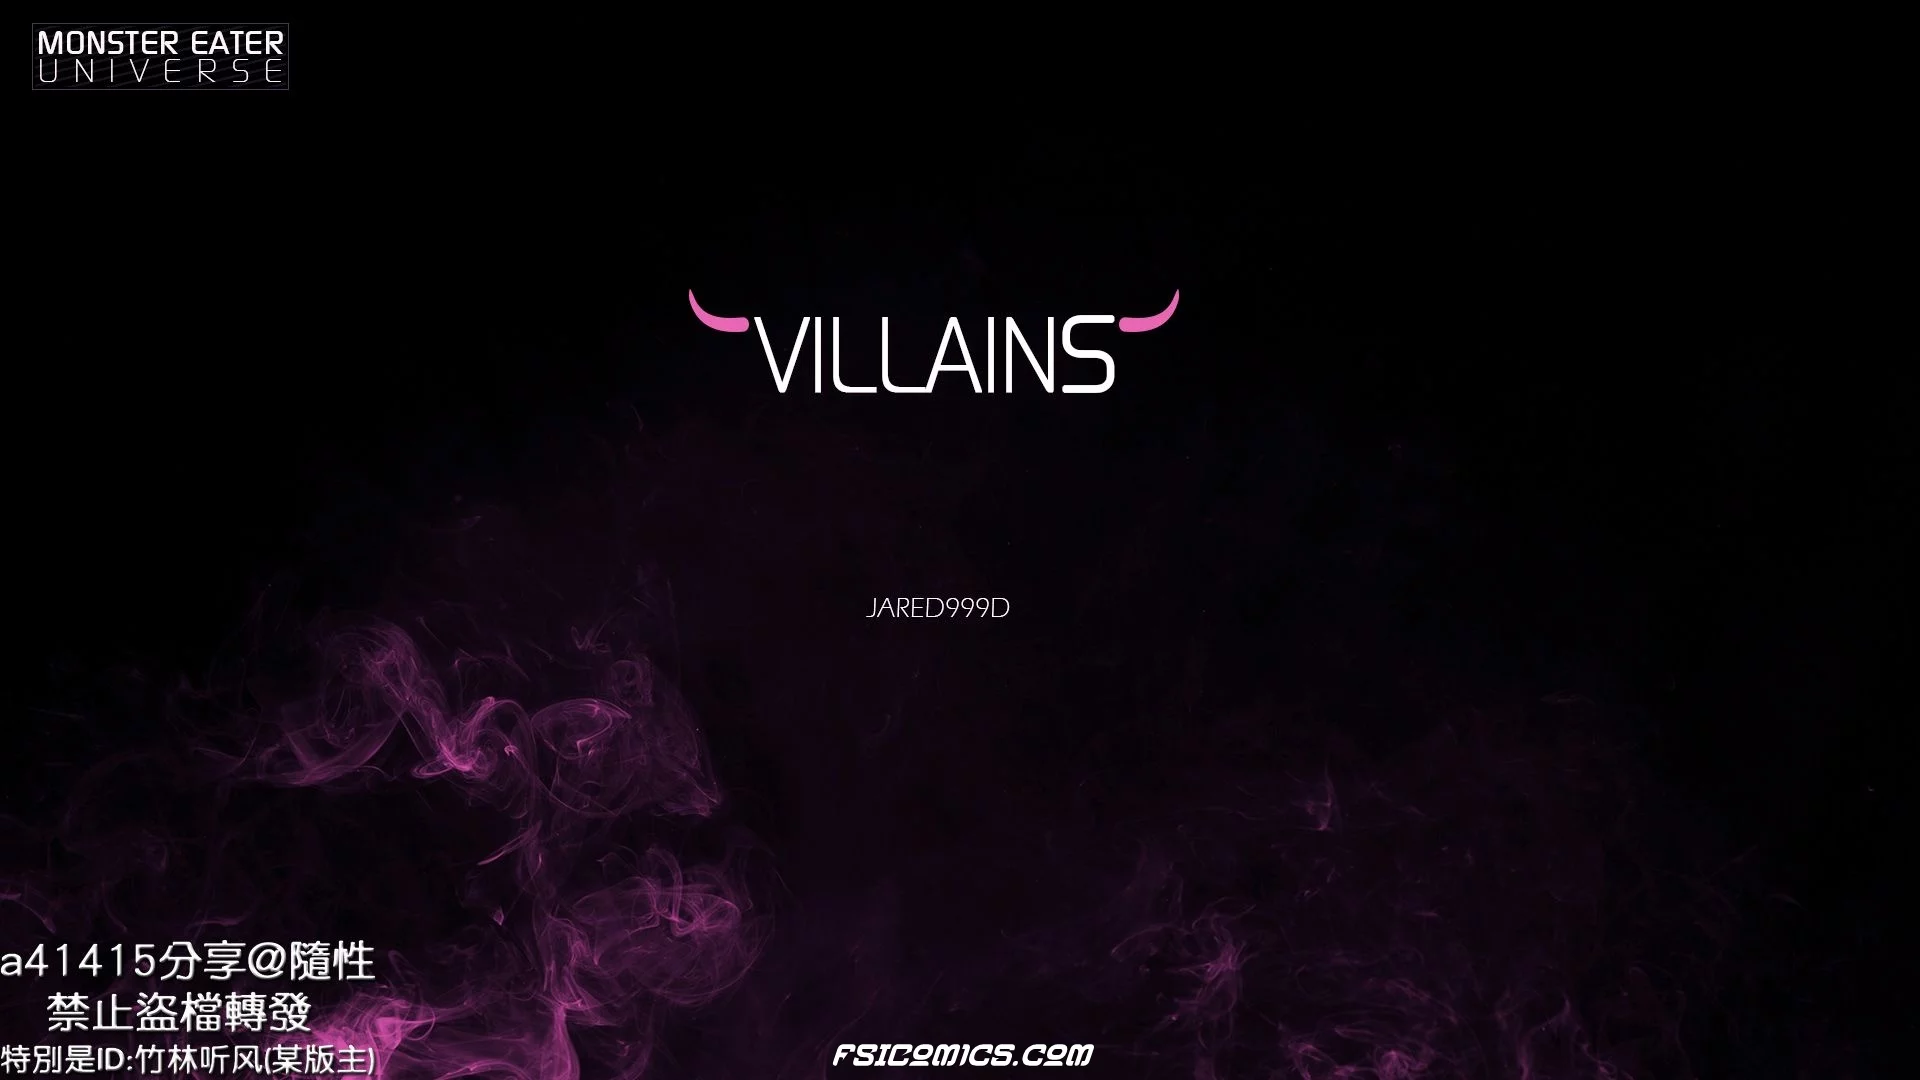 Villains Chapter 1 -Jared999D - 3 - FSIComics